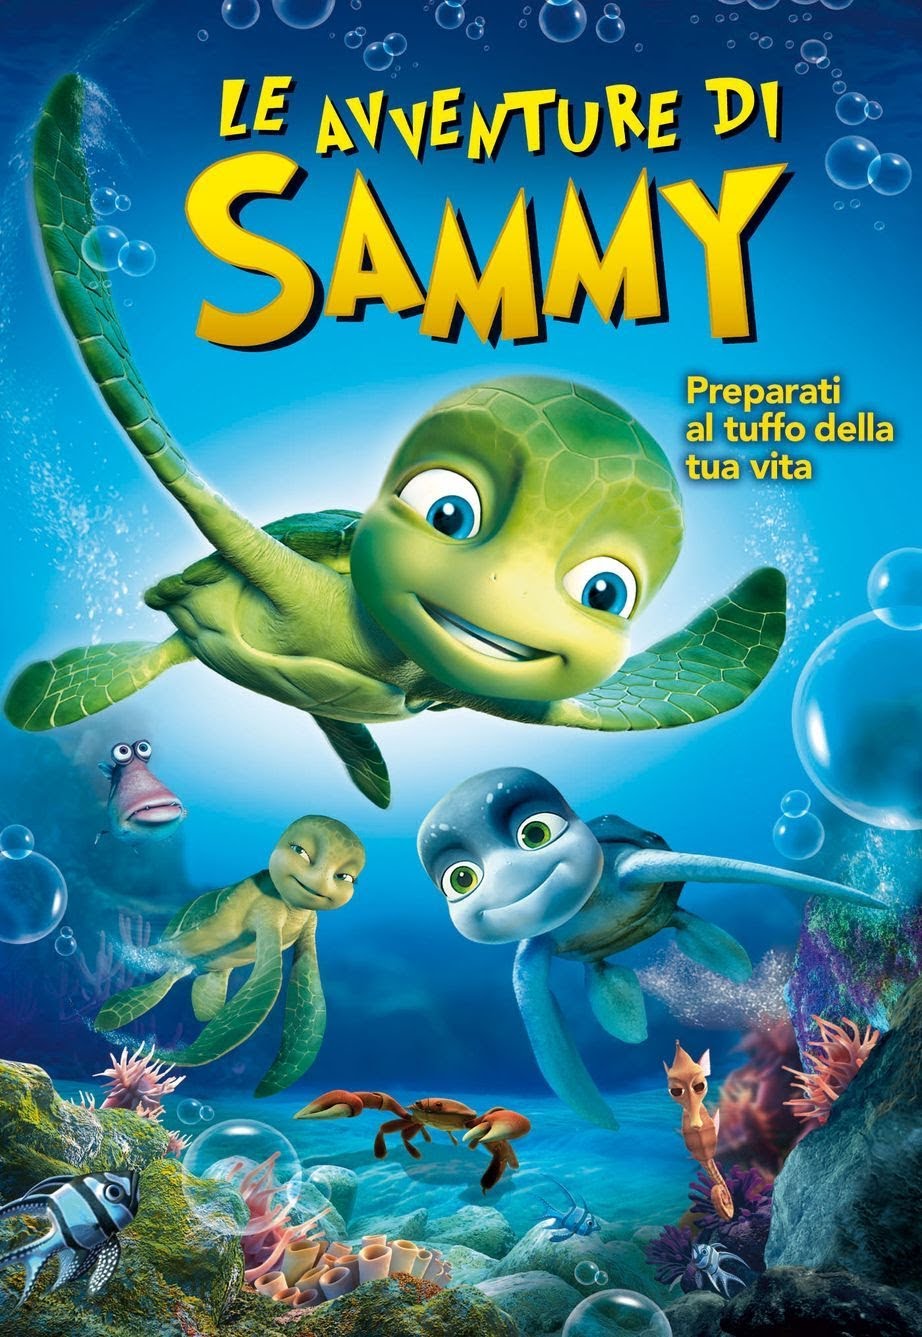 Le avventure di Sammy [HD] (2010)